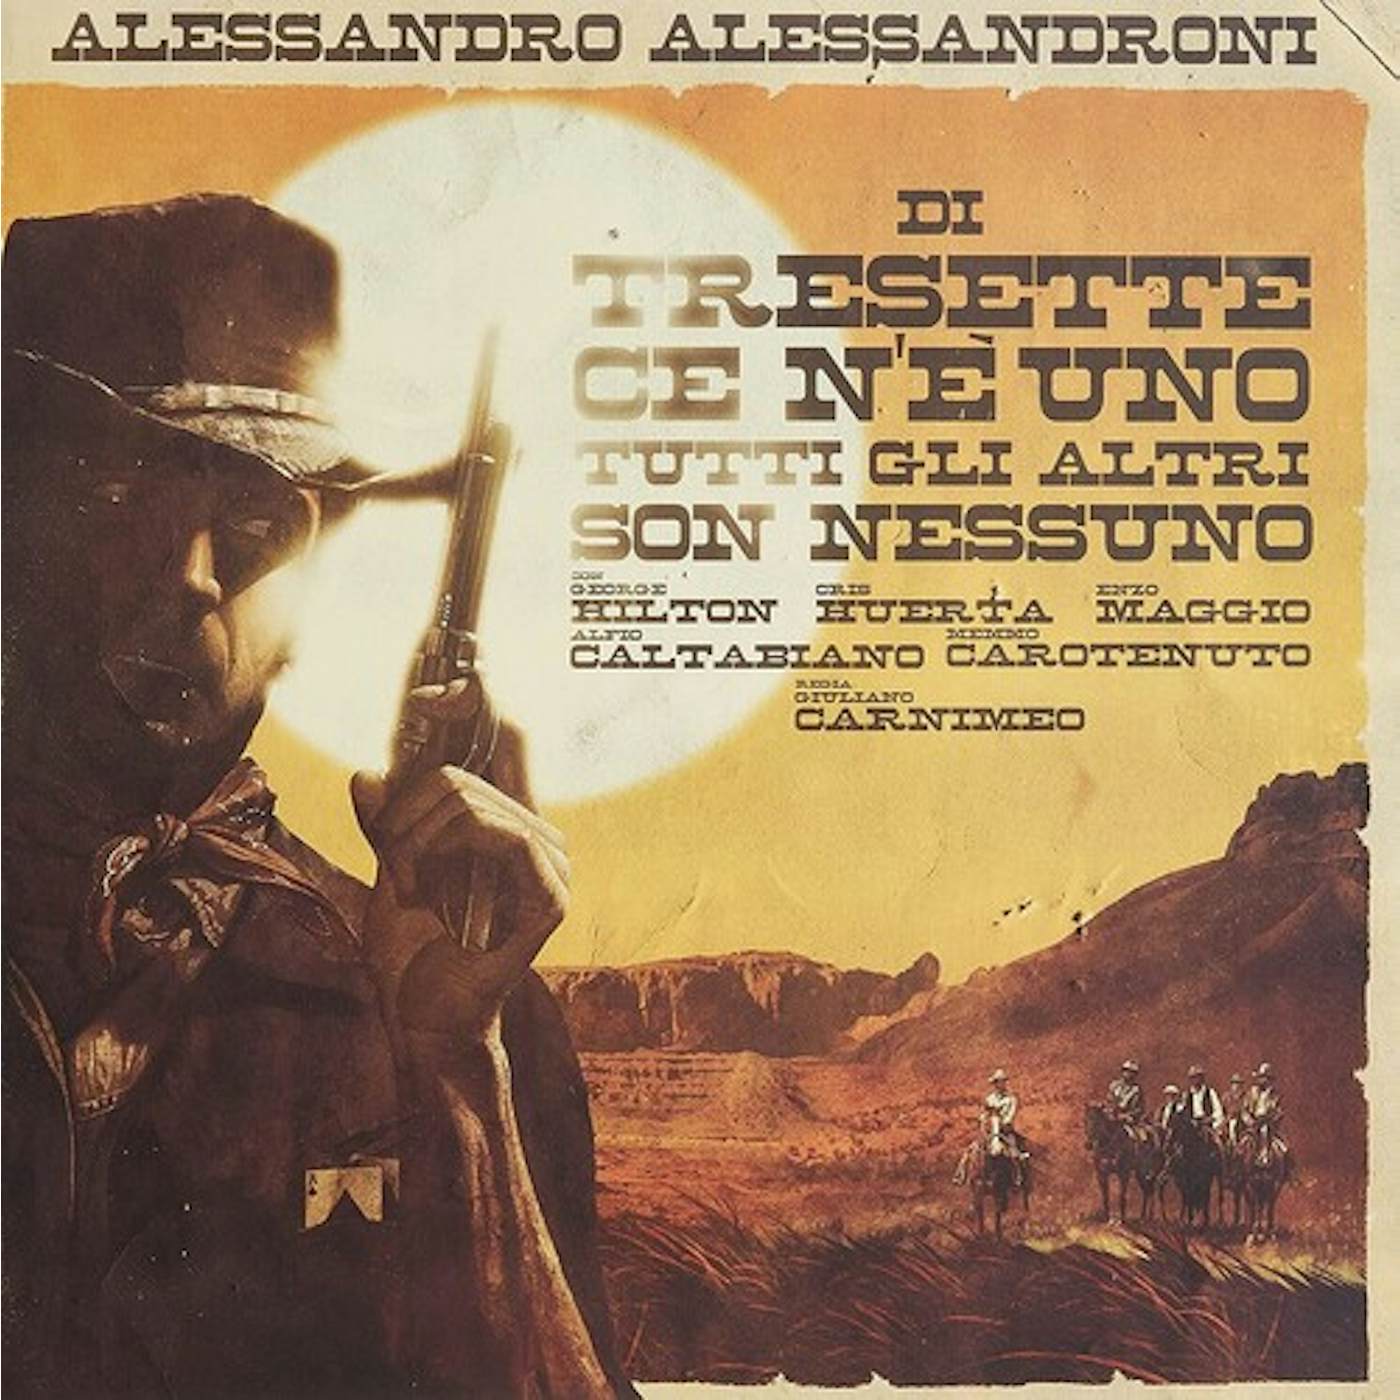 Alessandro Alessandroni DI TRESSETTE CE N'E UNO TUTTI GLI ALTRI SON Vinyl Record